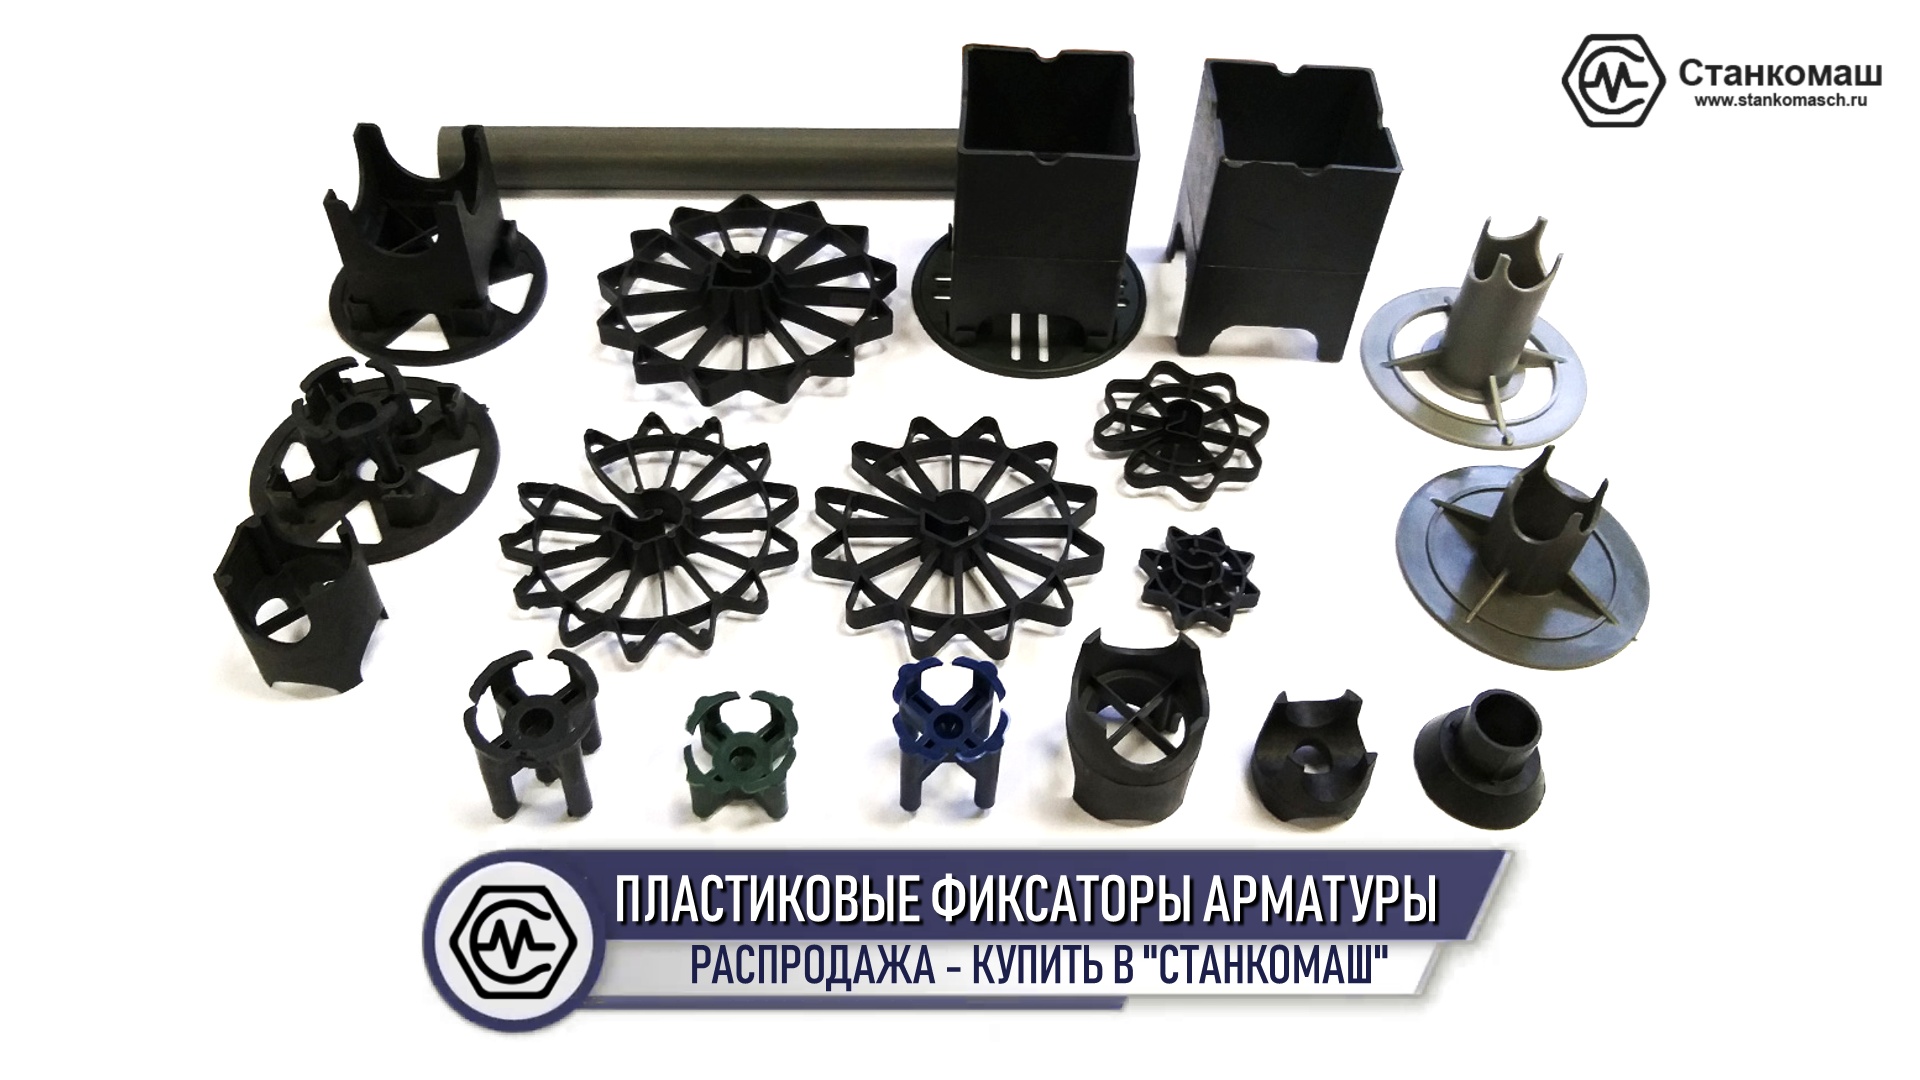 Распродажа пластиковых фиксаторов арматуры в Станкомаш